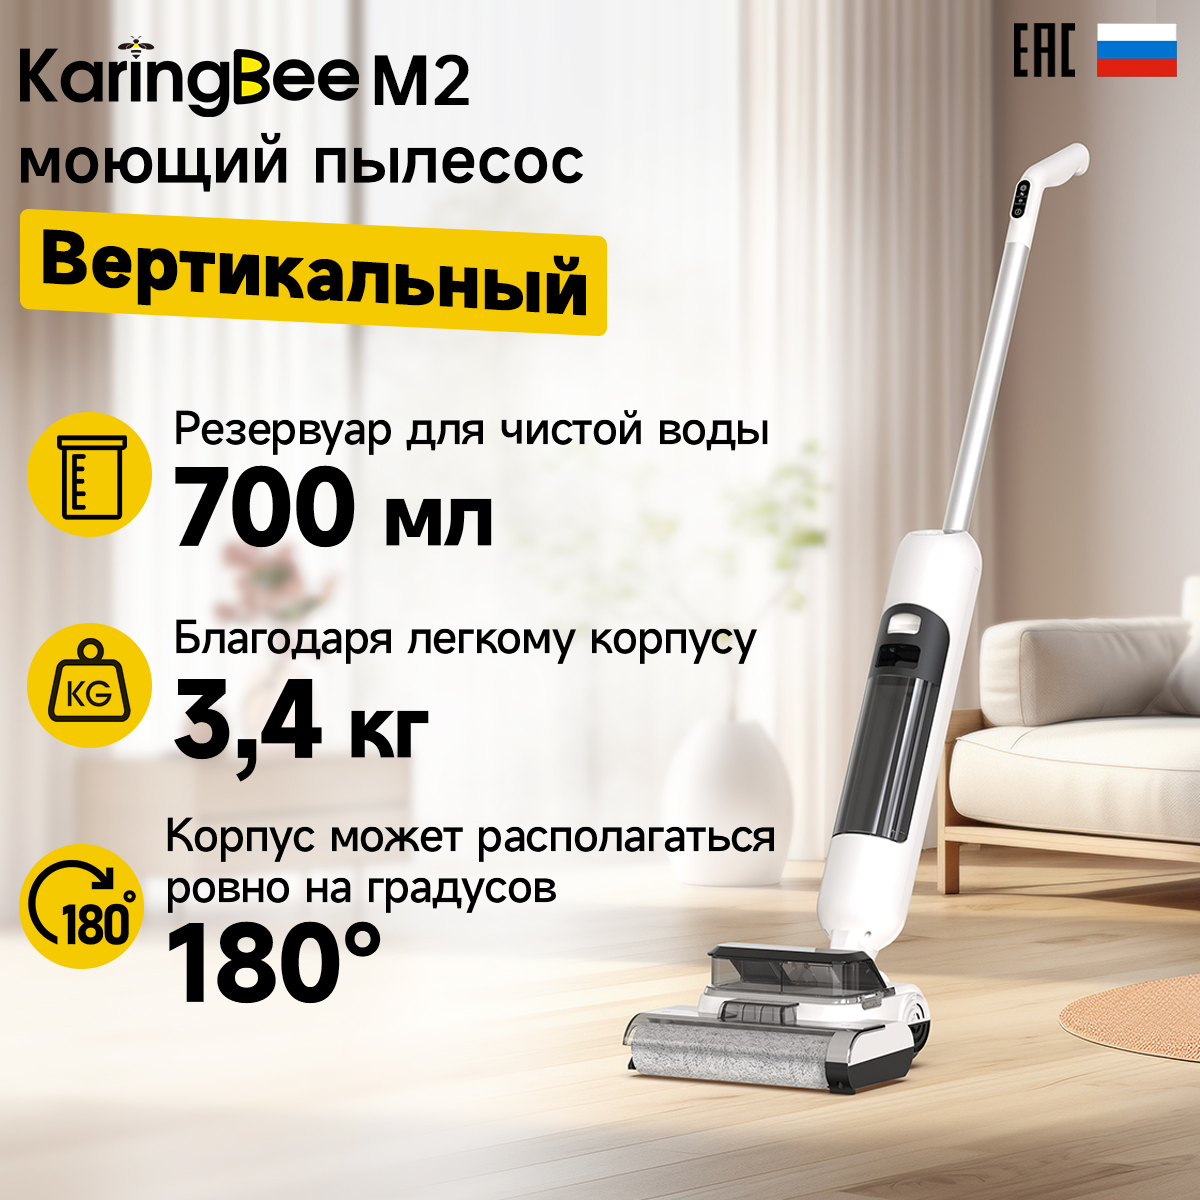 Пылесос Karingbee M2 белый, серый, купить в Москве, цены в интернет-магазинах на Мегамаркет